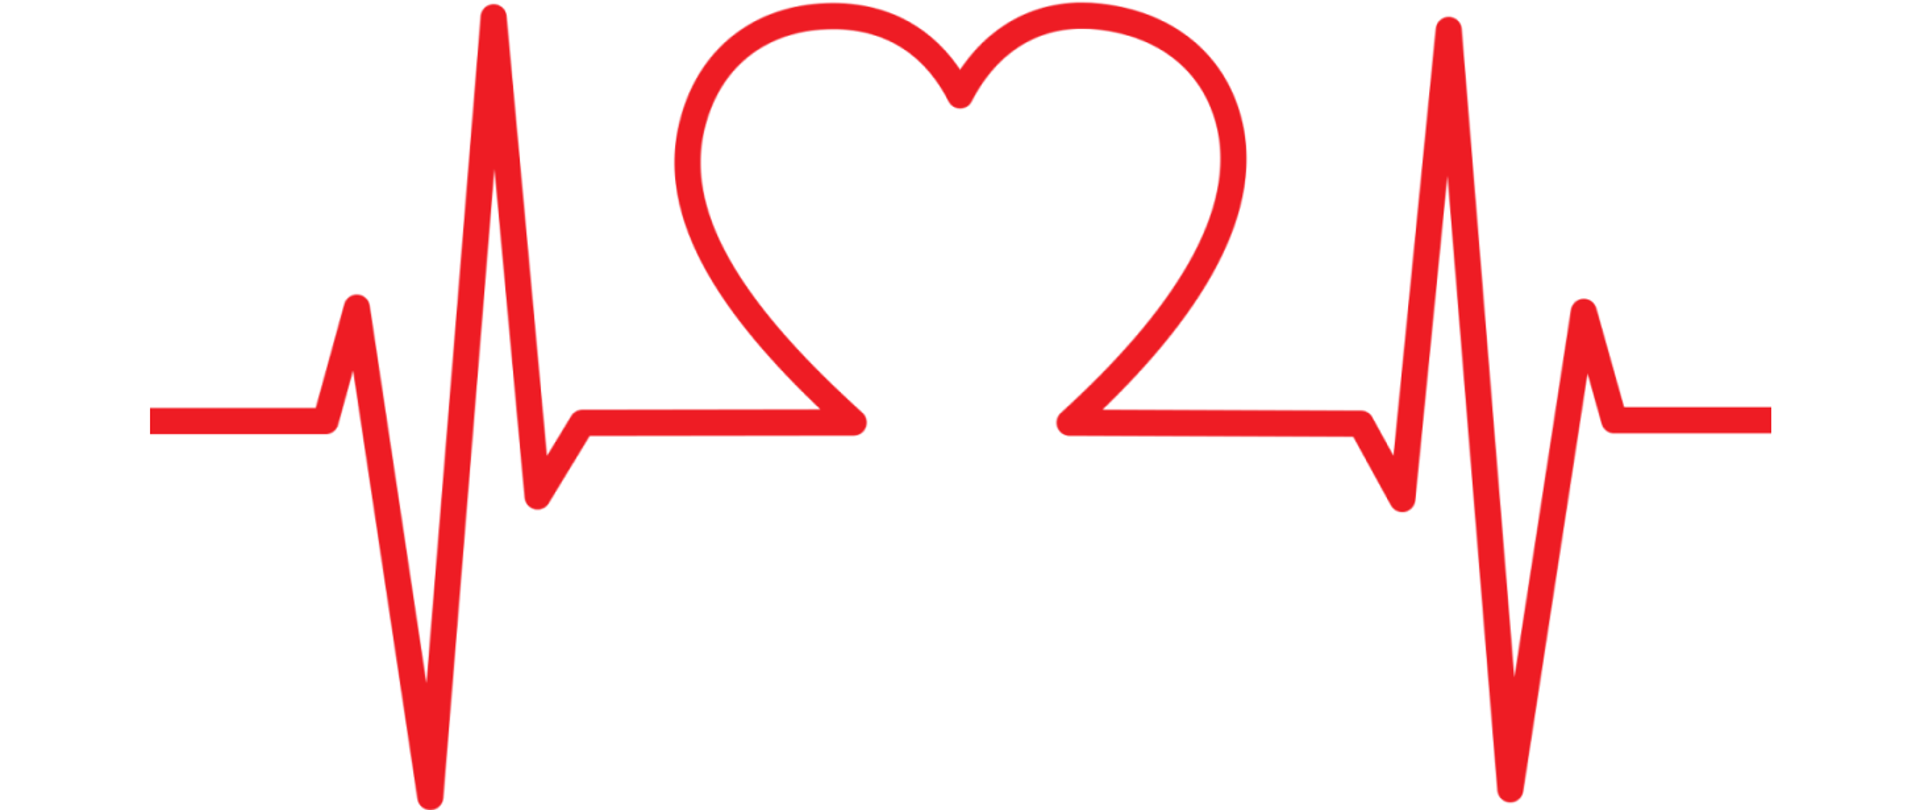 Grafika przedstawia serce na lini charakteryzującej pracę serca